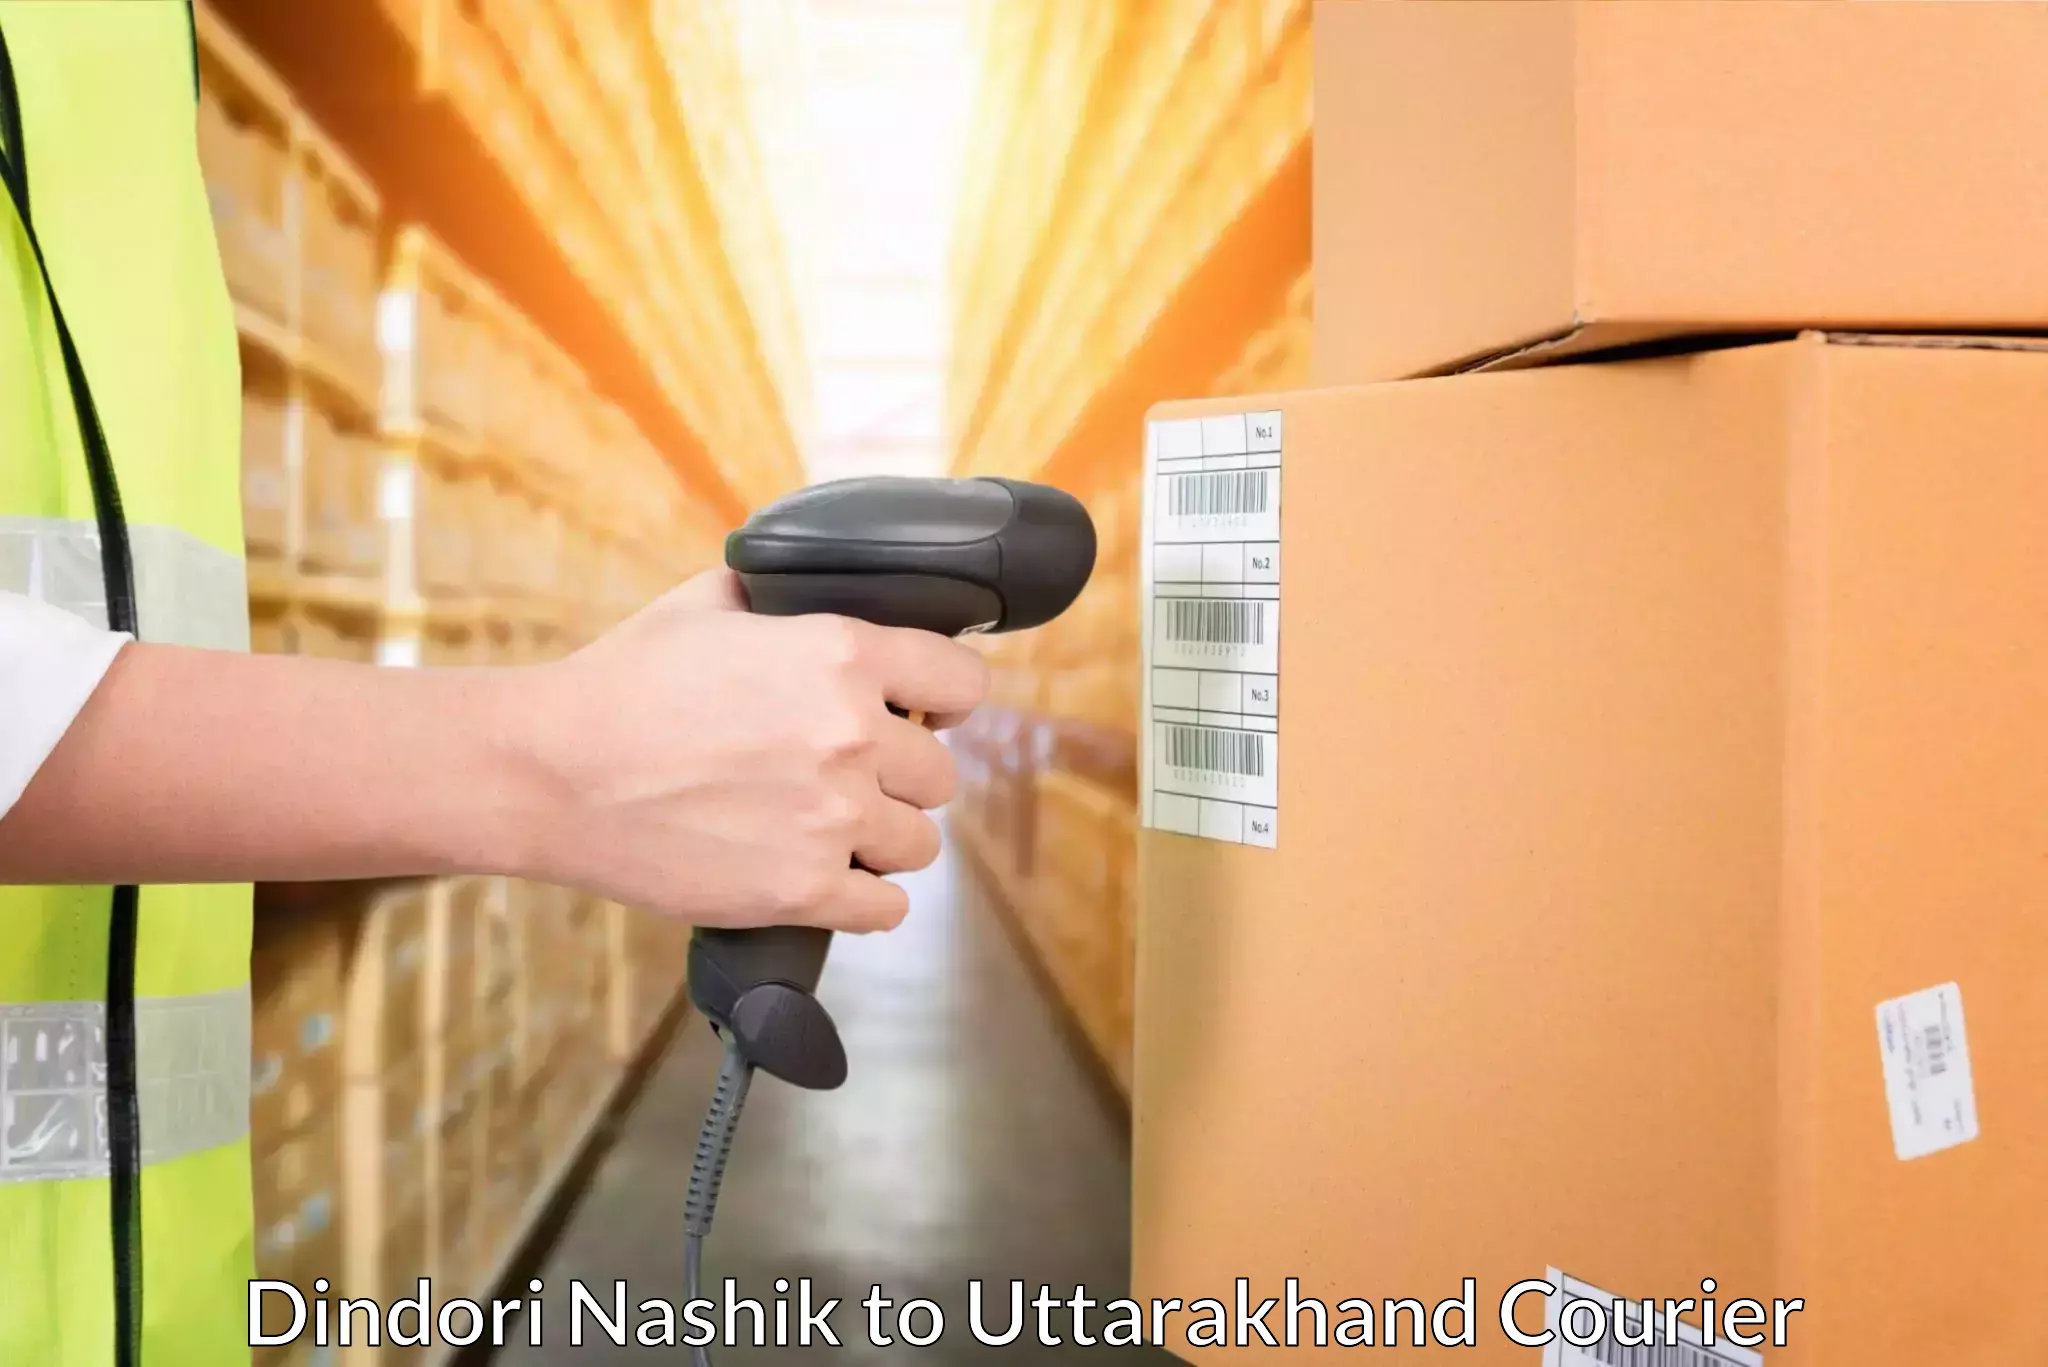 Large package courier Dindori Nashik to Tanakpur